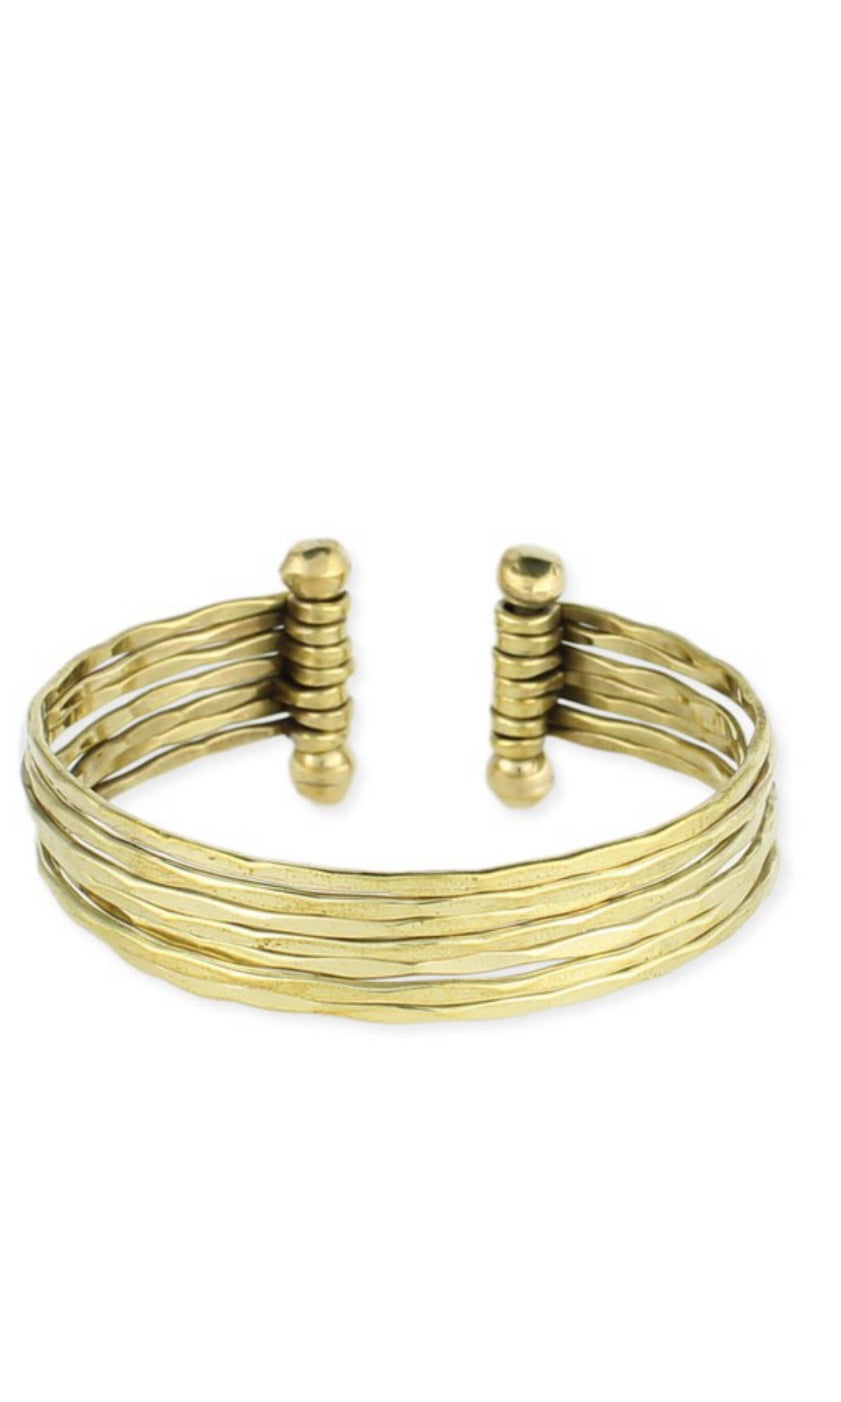 Bracelet Boho Chic Gold Hammered 7 Line Cuff Bracelet